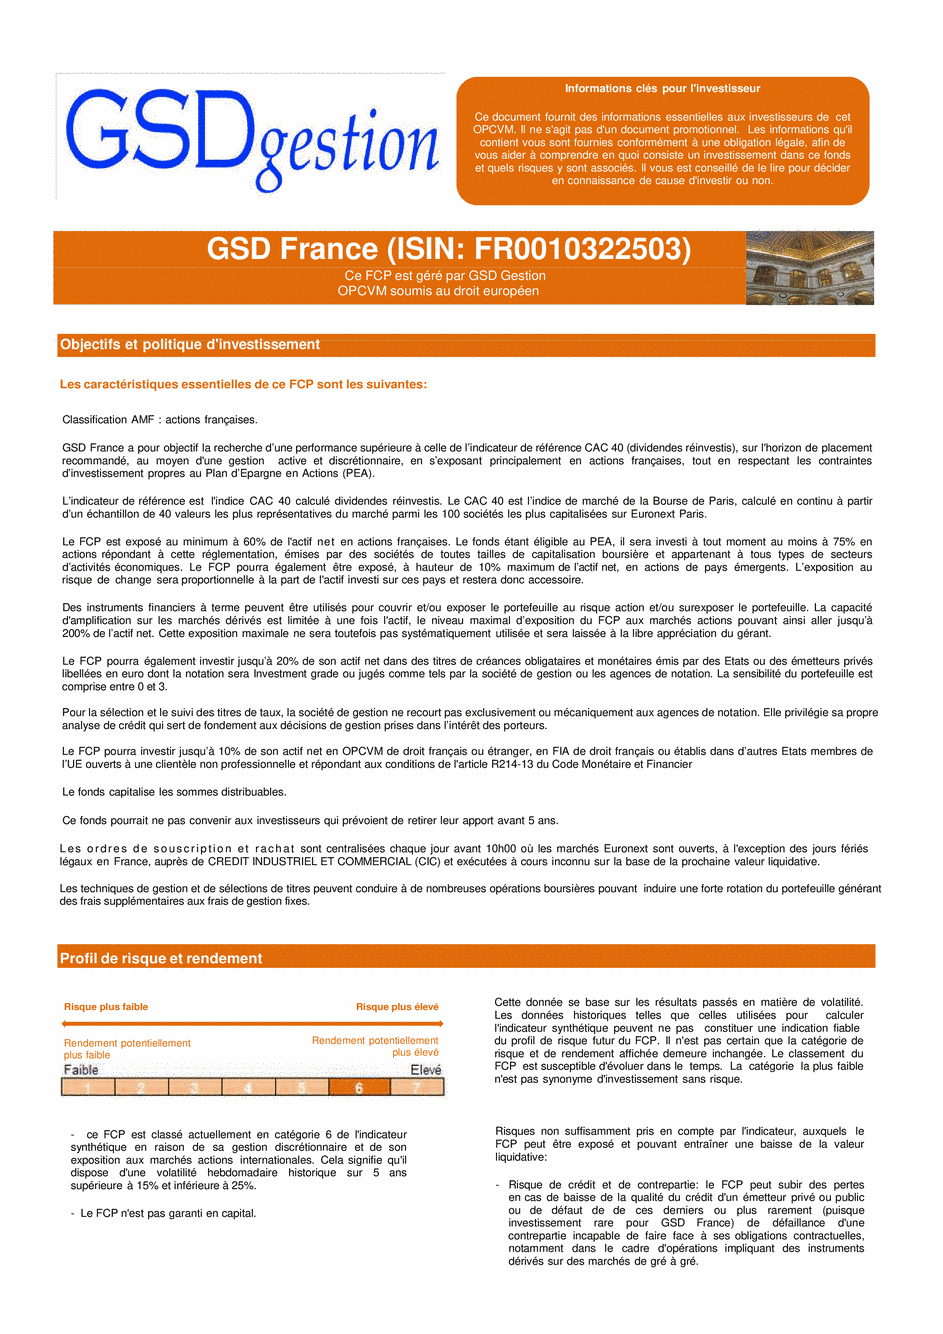 DICI-Prospectus Complet GSD France - 21/11/2018 - Français